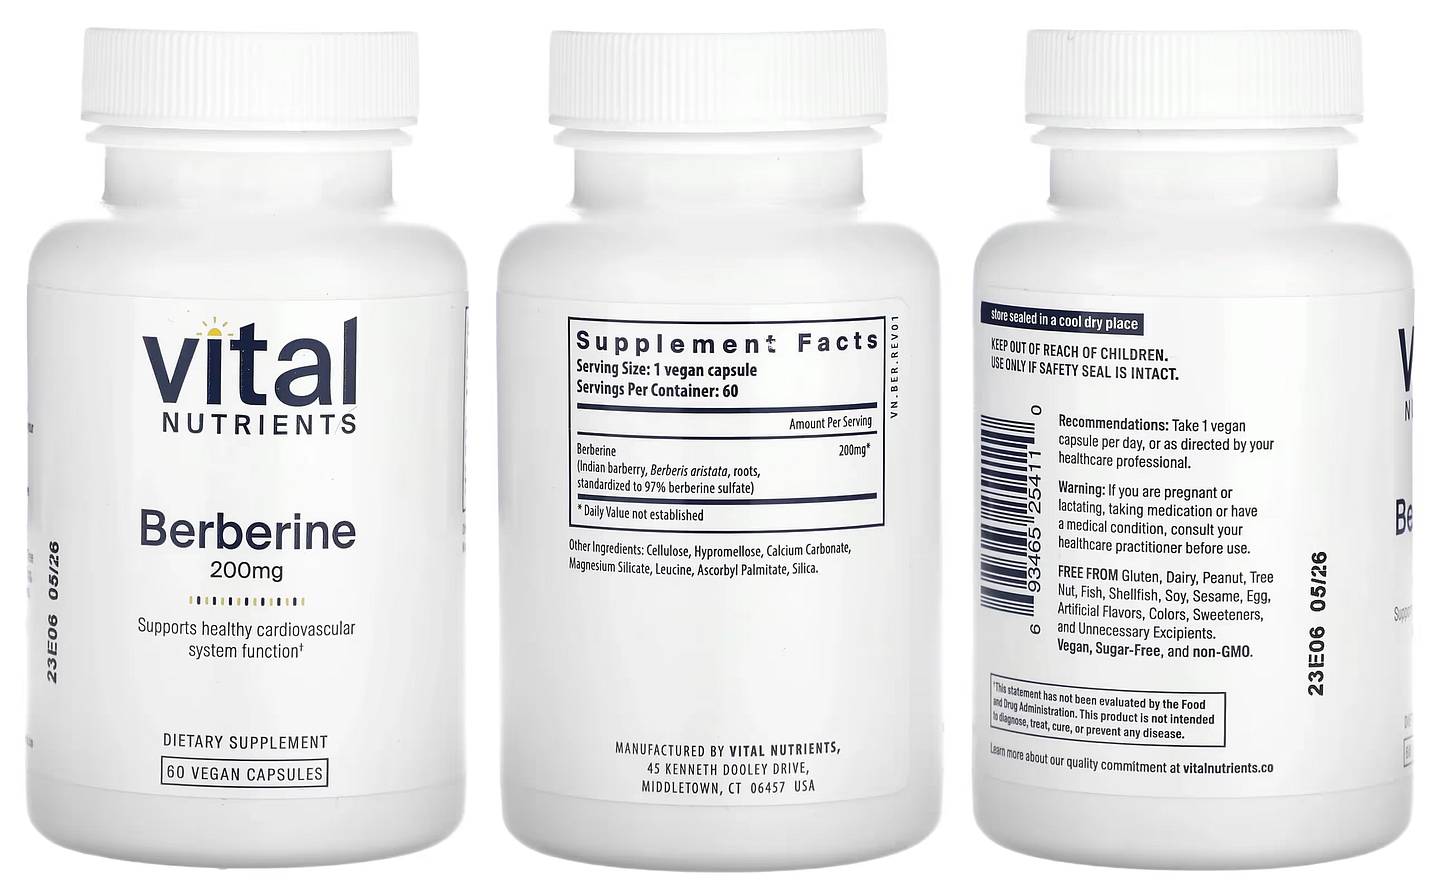 Vital Nutrients, Berberine packaging